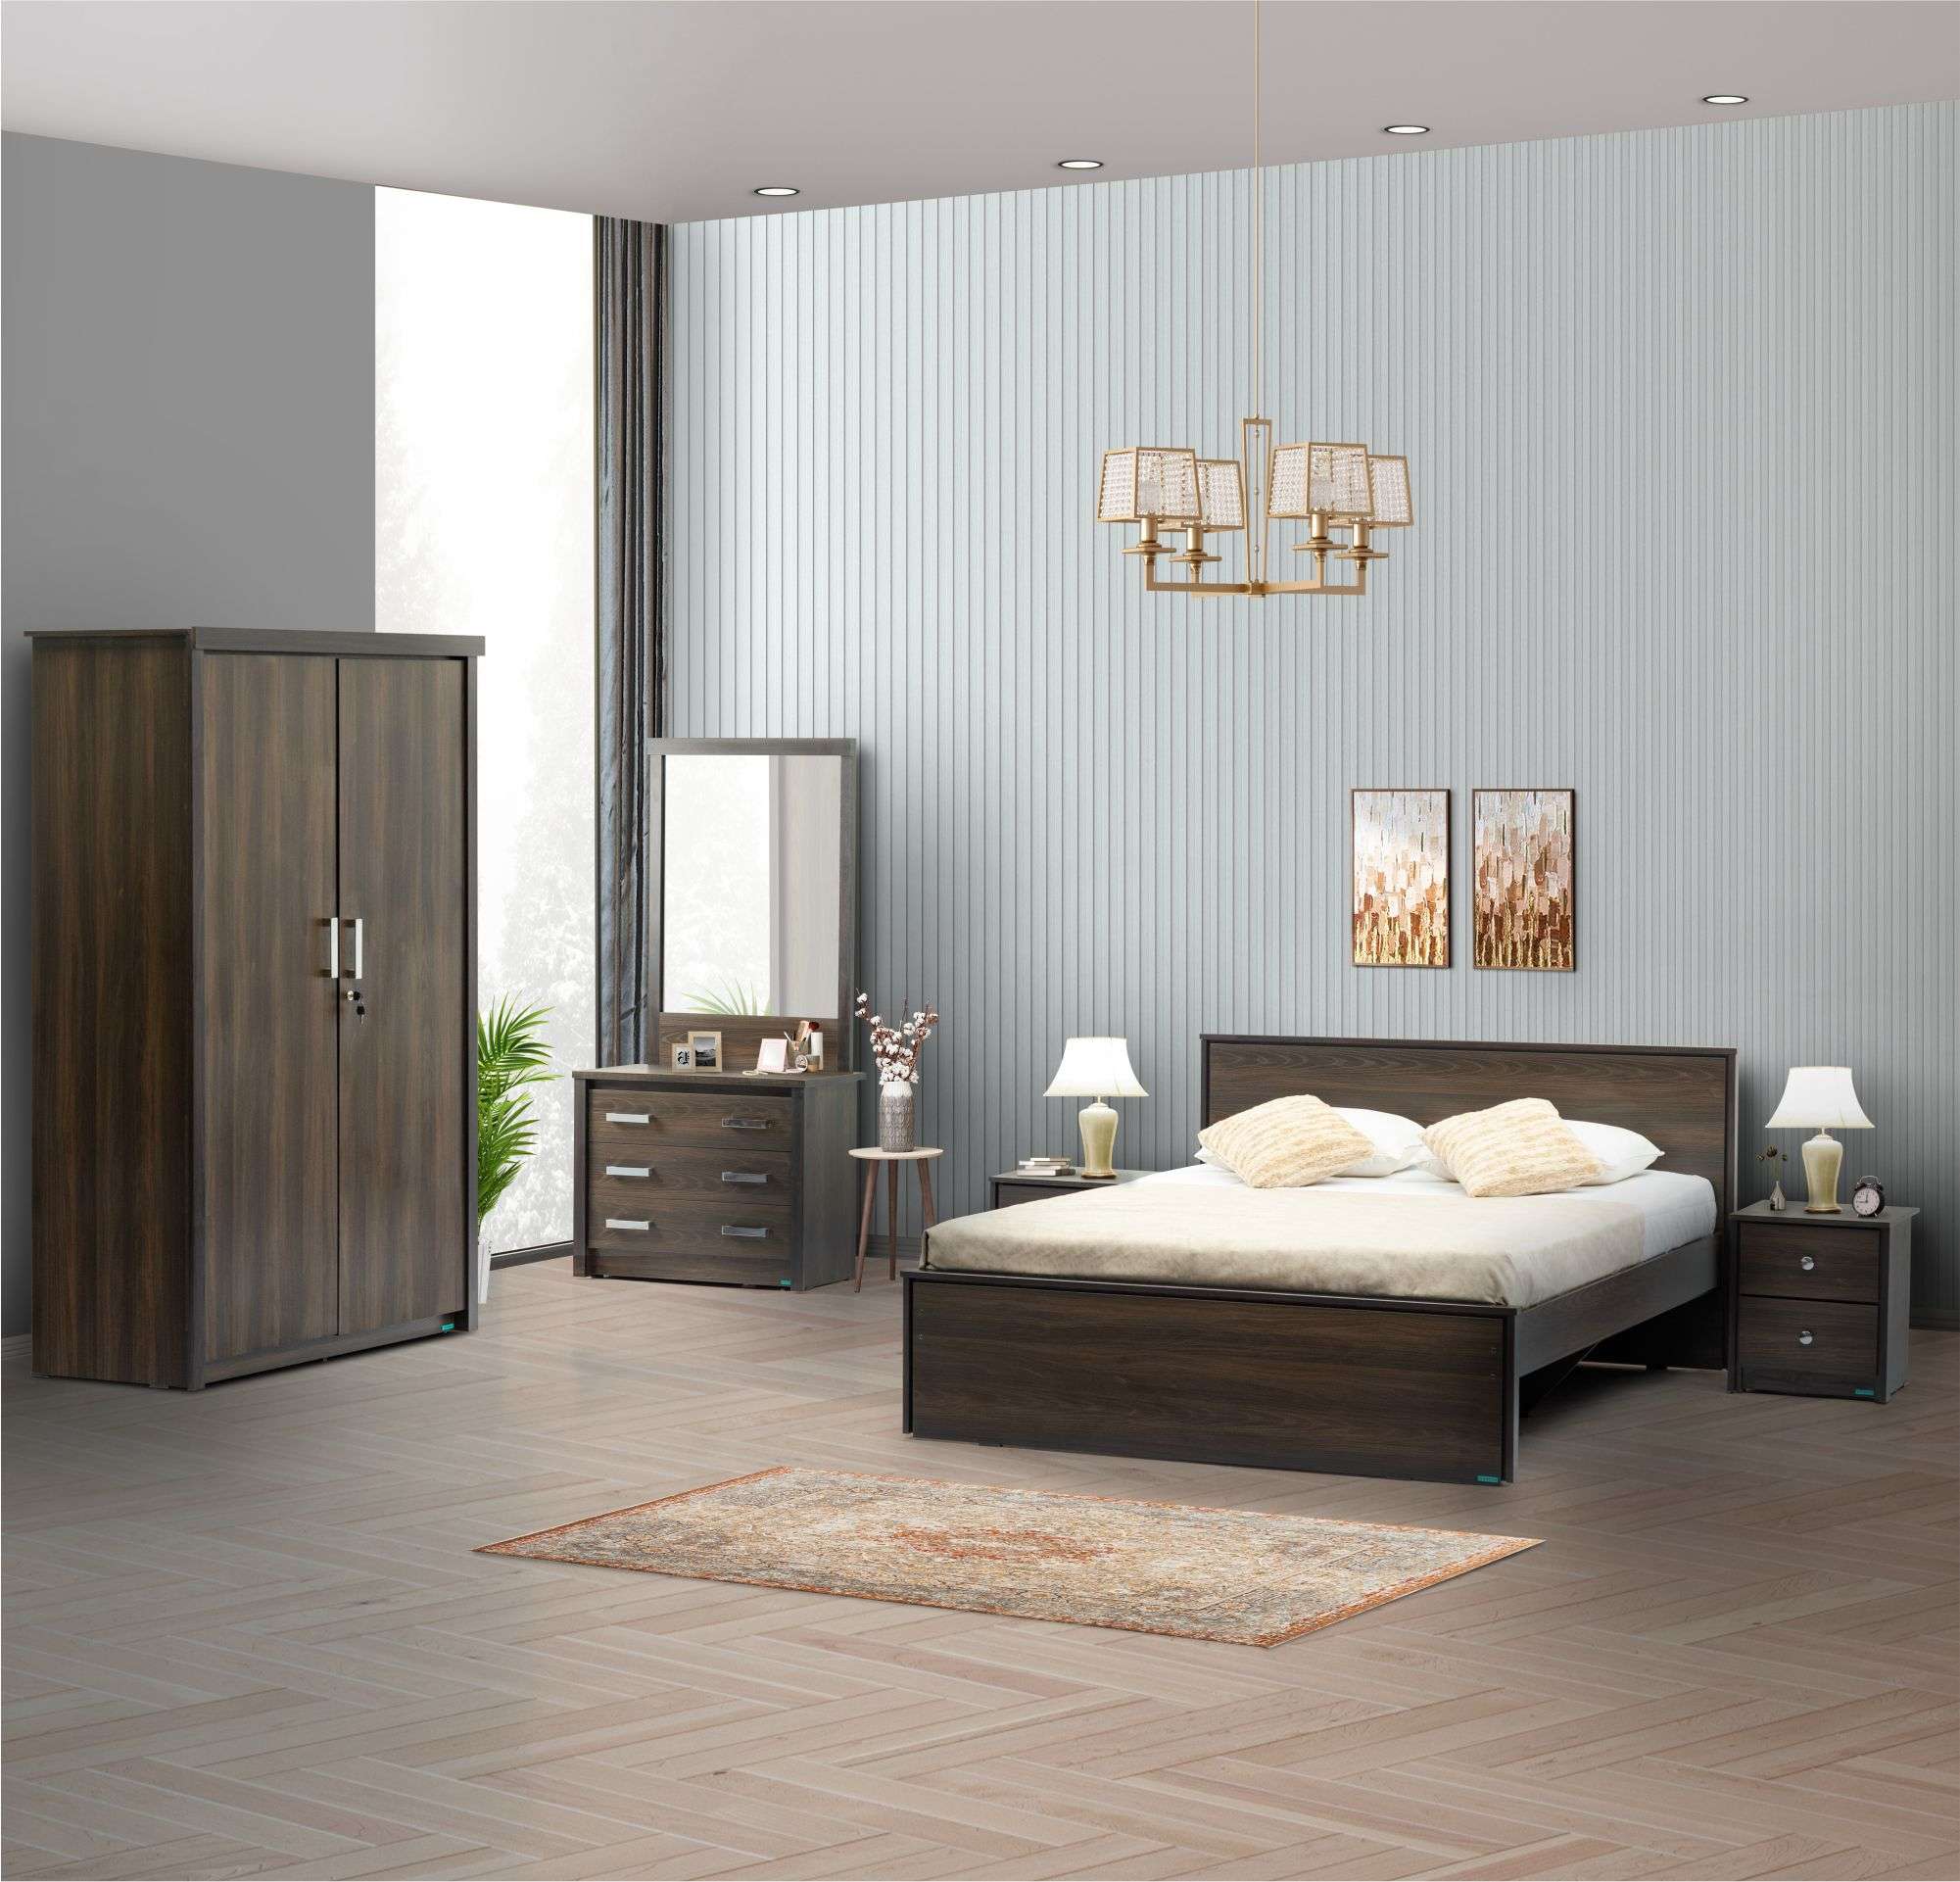 Ornate 4 Piece Bedroom Set (Queen Bed + 2 Door Wardrobe + Dresser + Side Table)